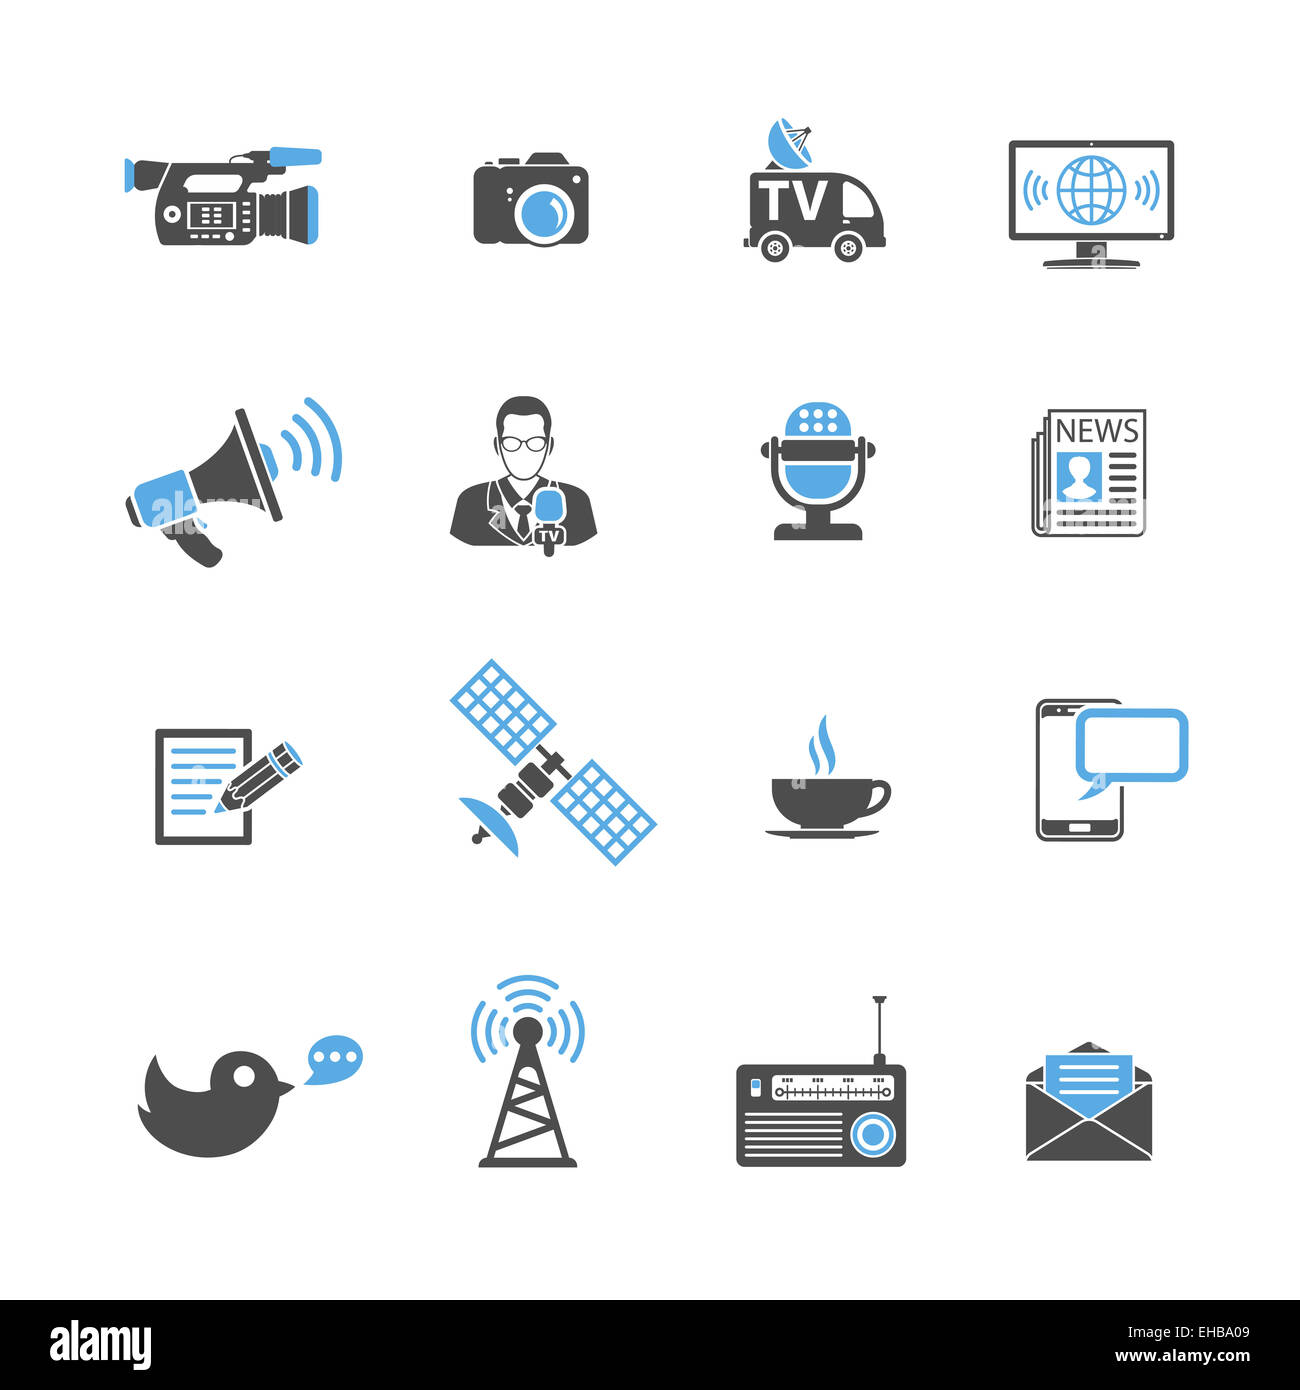 Medien und News Icons Set mit Journalismus, Fernsehen, Zeitung und SMS in zwei Farben. isoliert auf weiss. Stockfoto